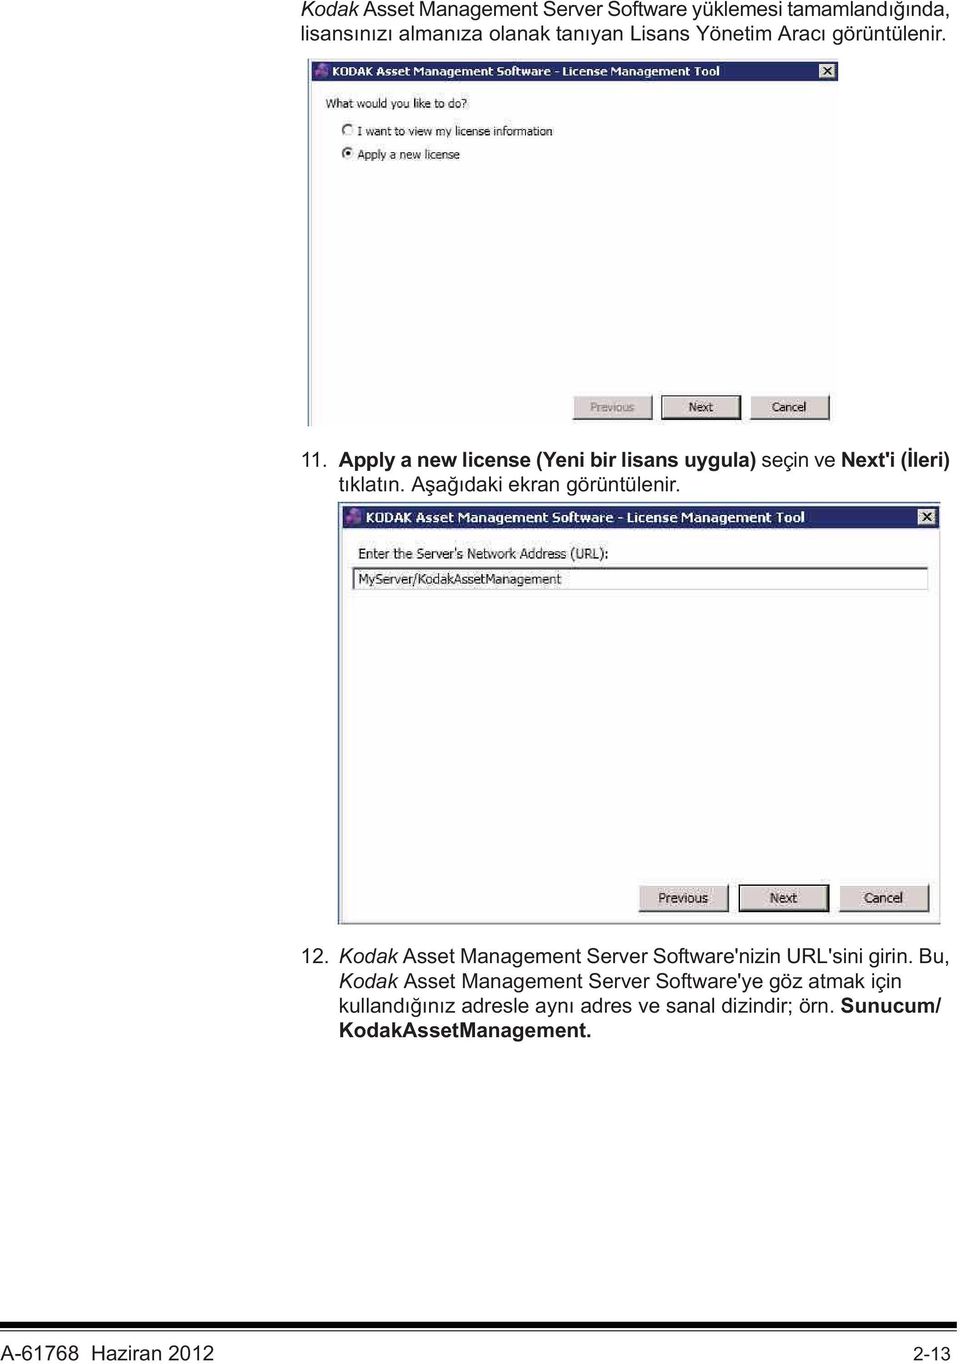 A a daki ekran görüntülenir. 12. Kodak Asset Management Server Software'nizin URL'sini girin.